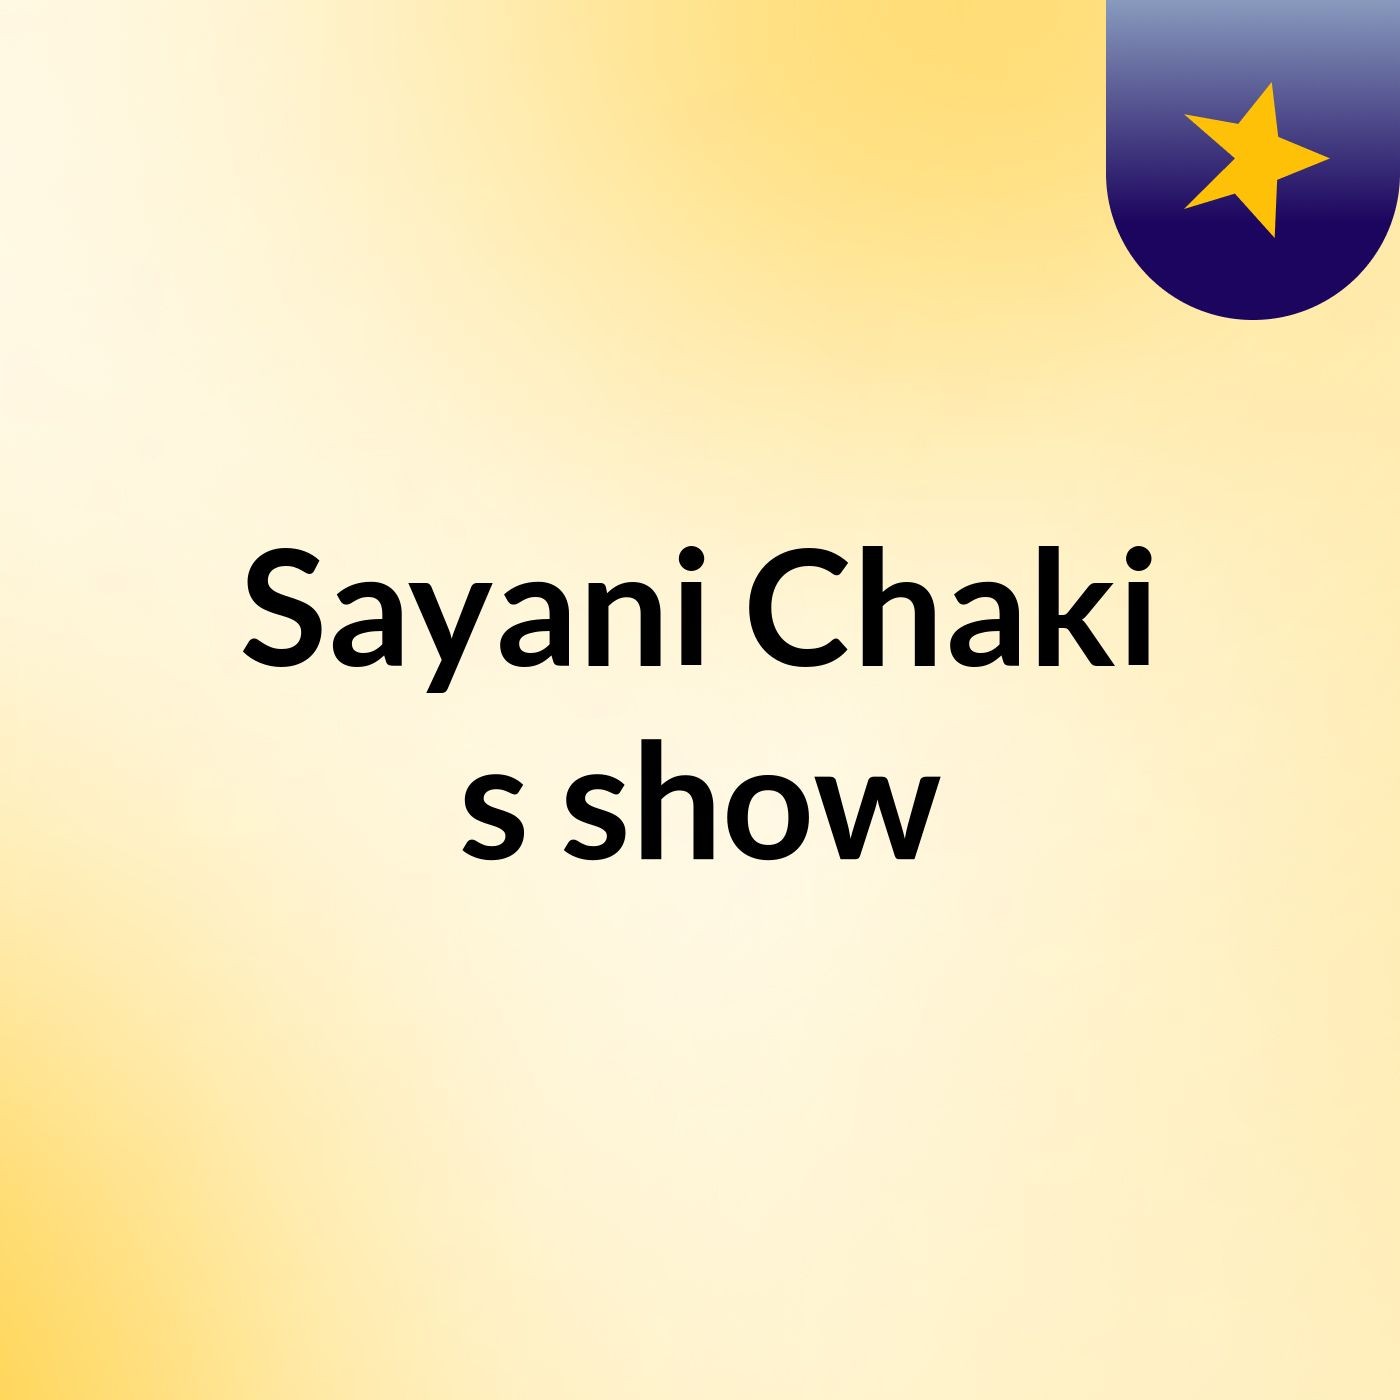 Sayani Chaki's show